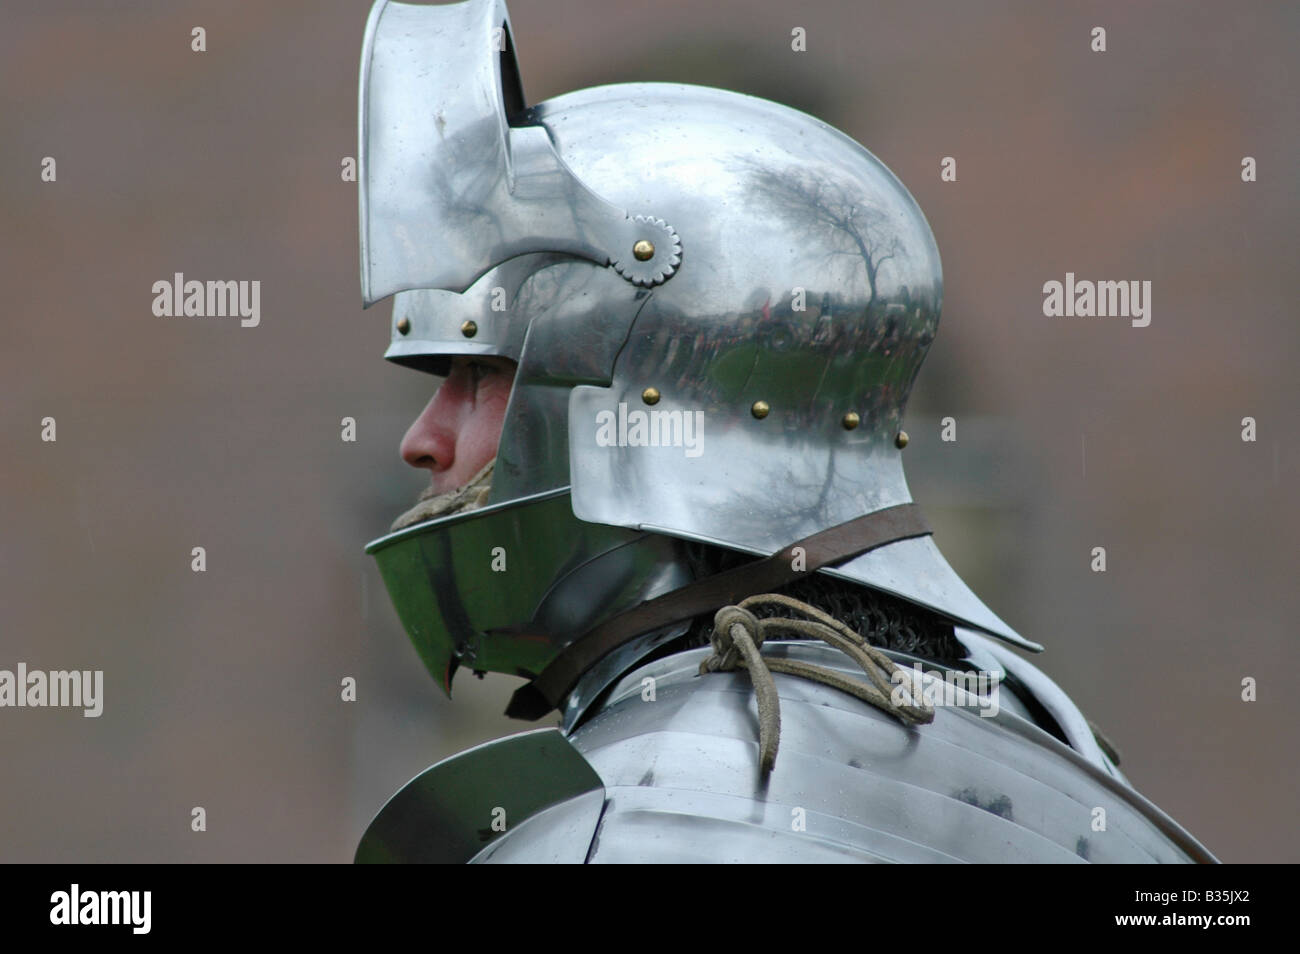 medieval knight helmet open